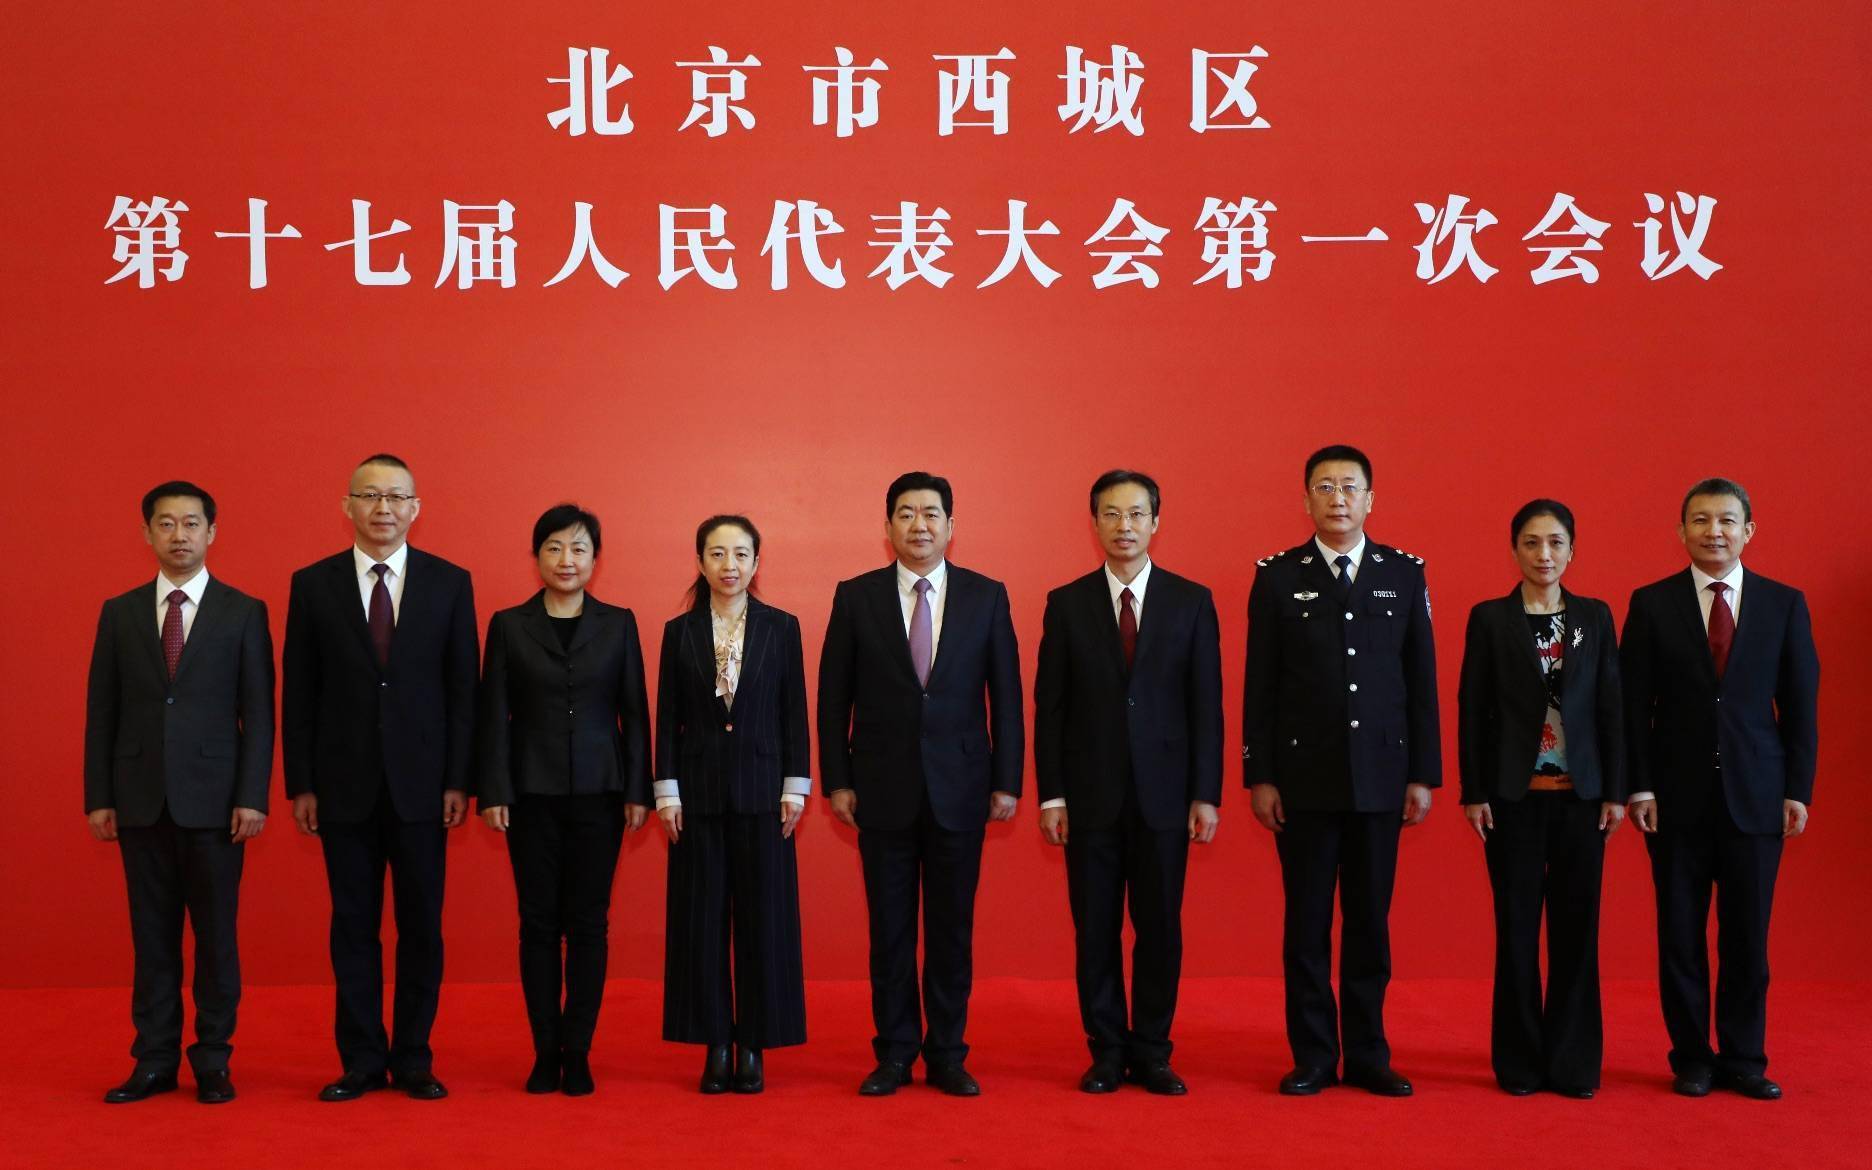 新京报快讯(记者 戴轩)今天(12月17日),北京市西城区政府新一届领导